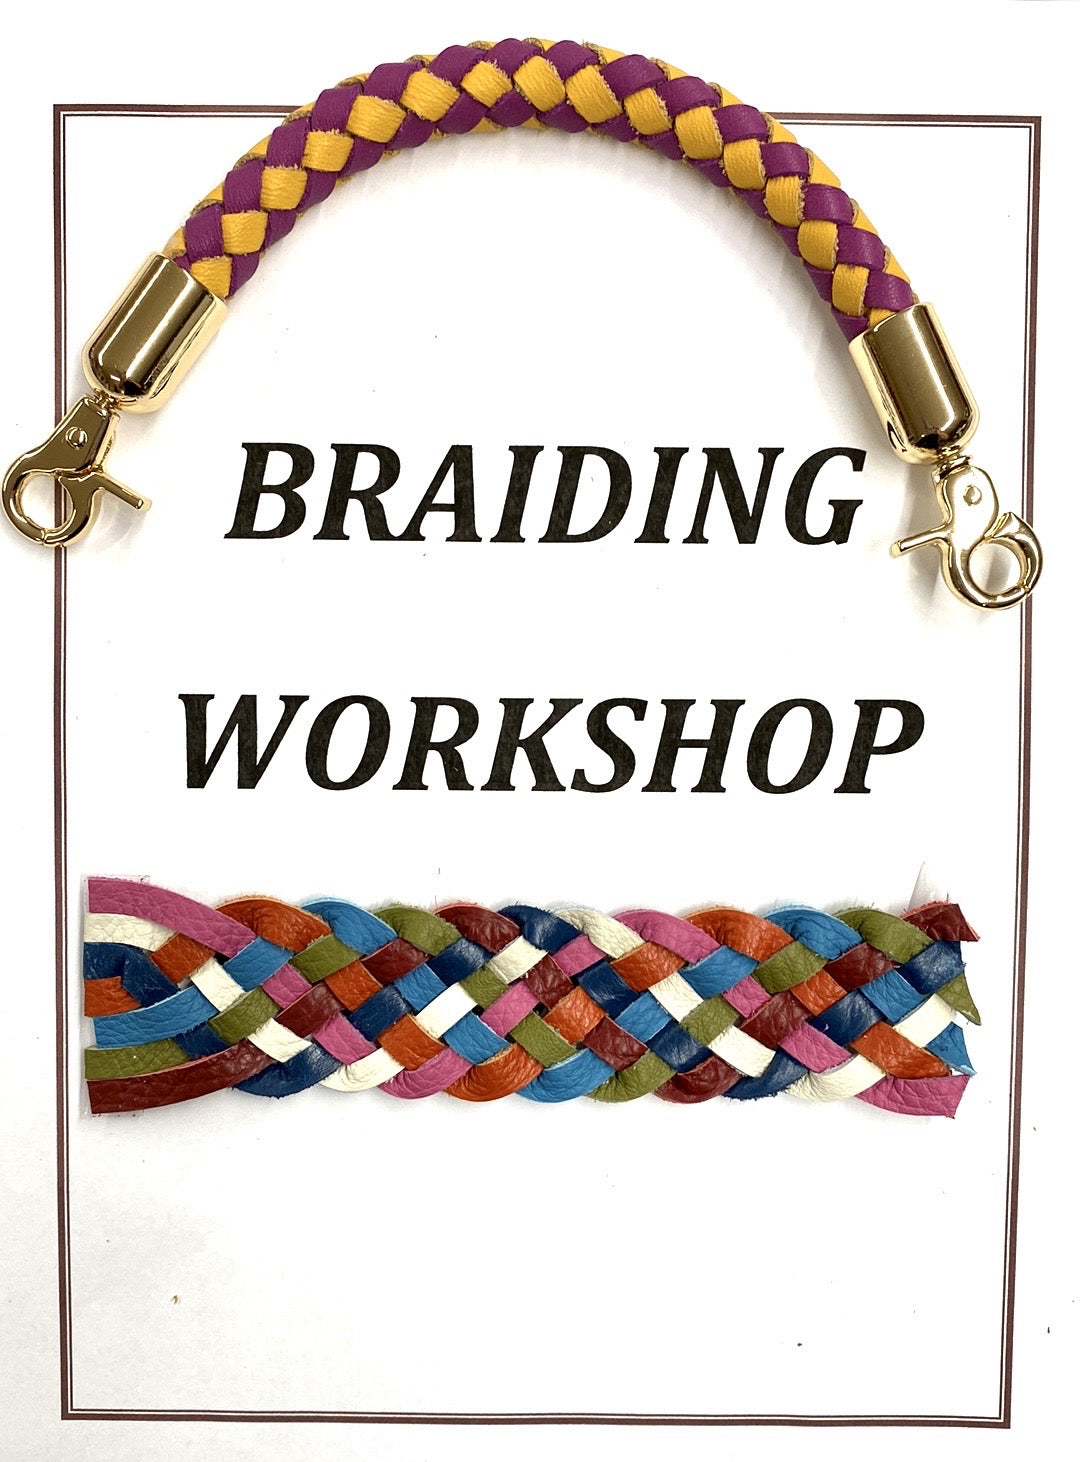 Braiding Techniques Workshop - Session 4, video 2